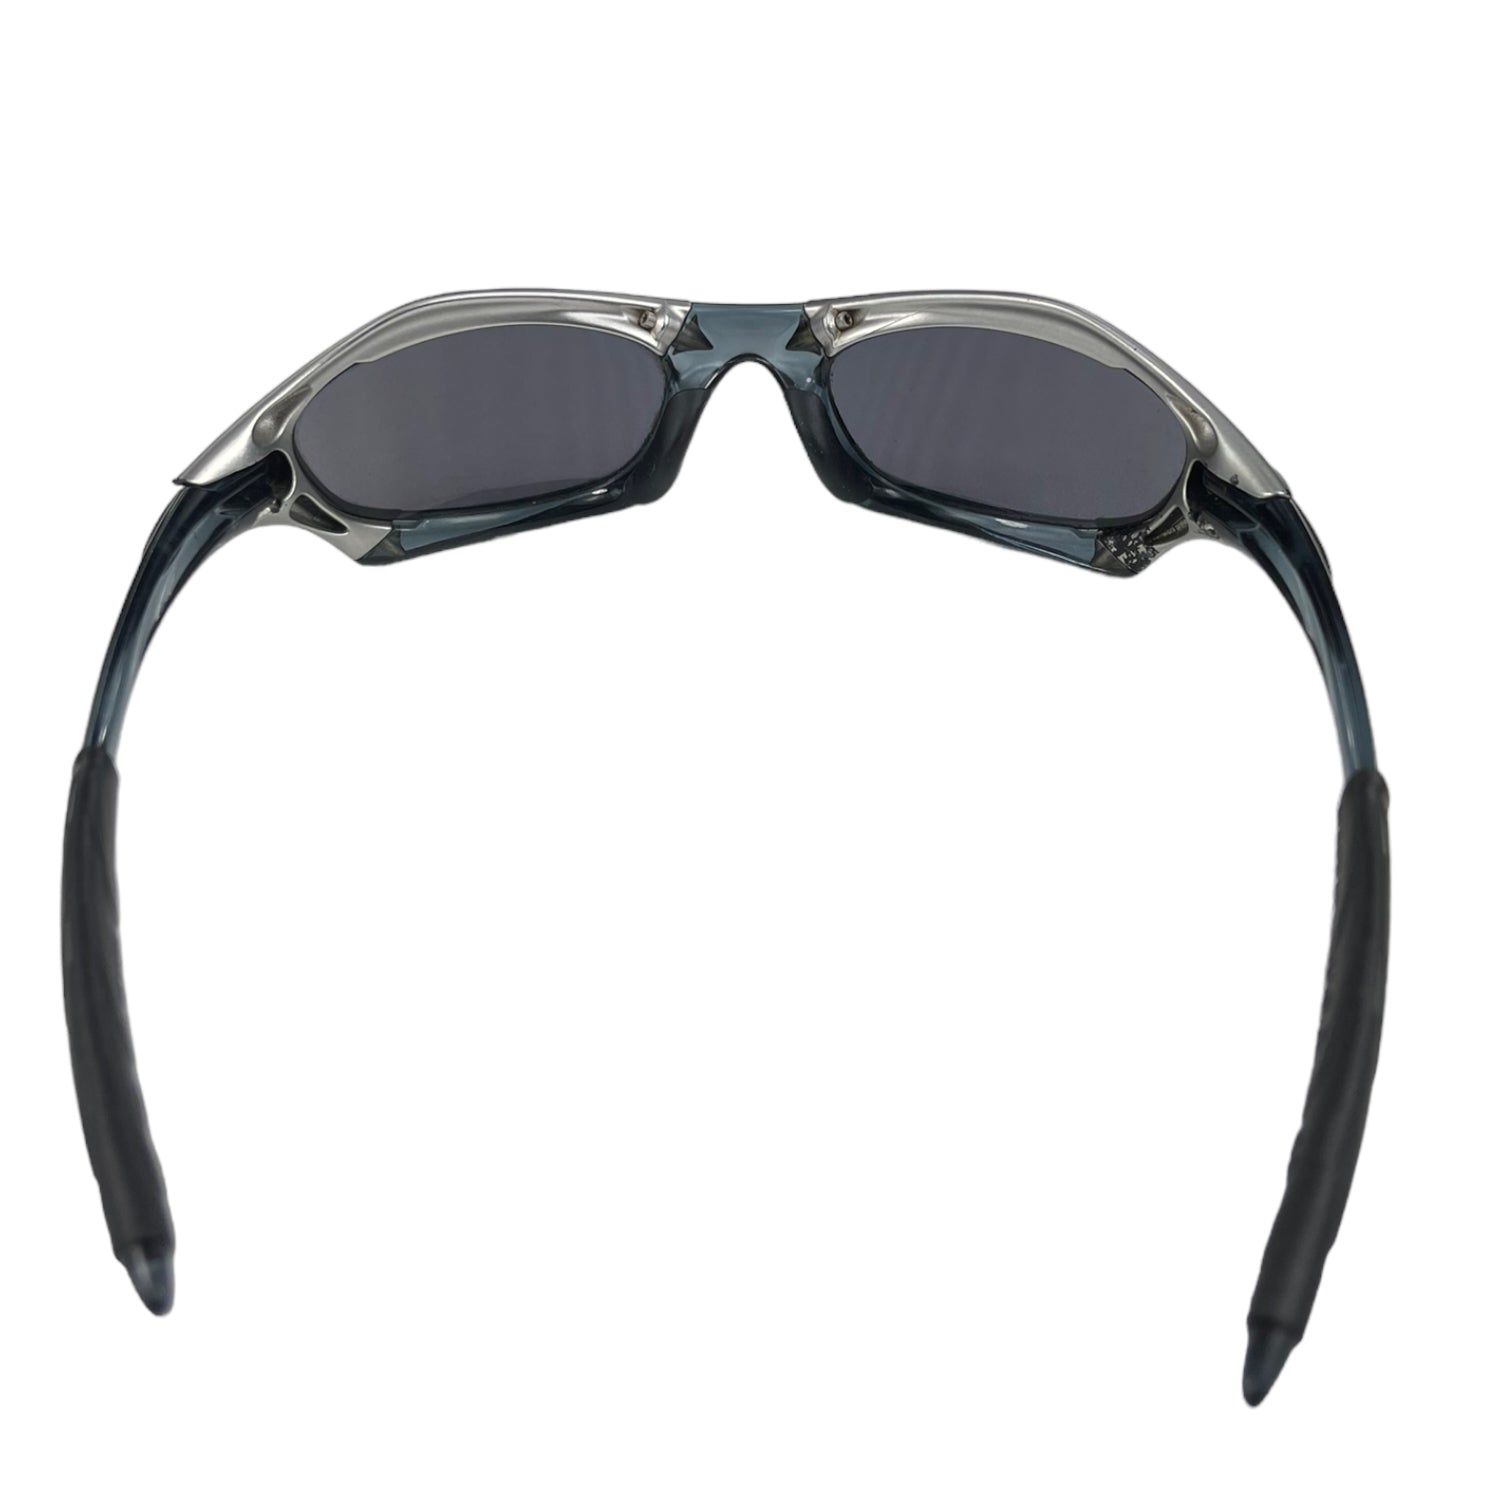 2000s Oakley Splice sunglasses